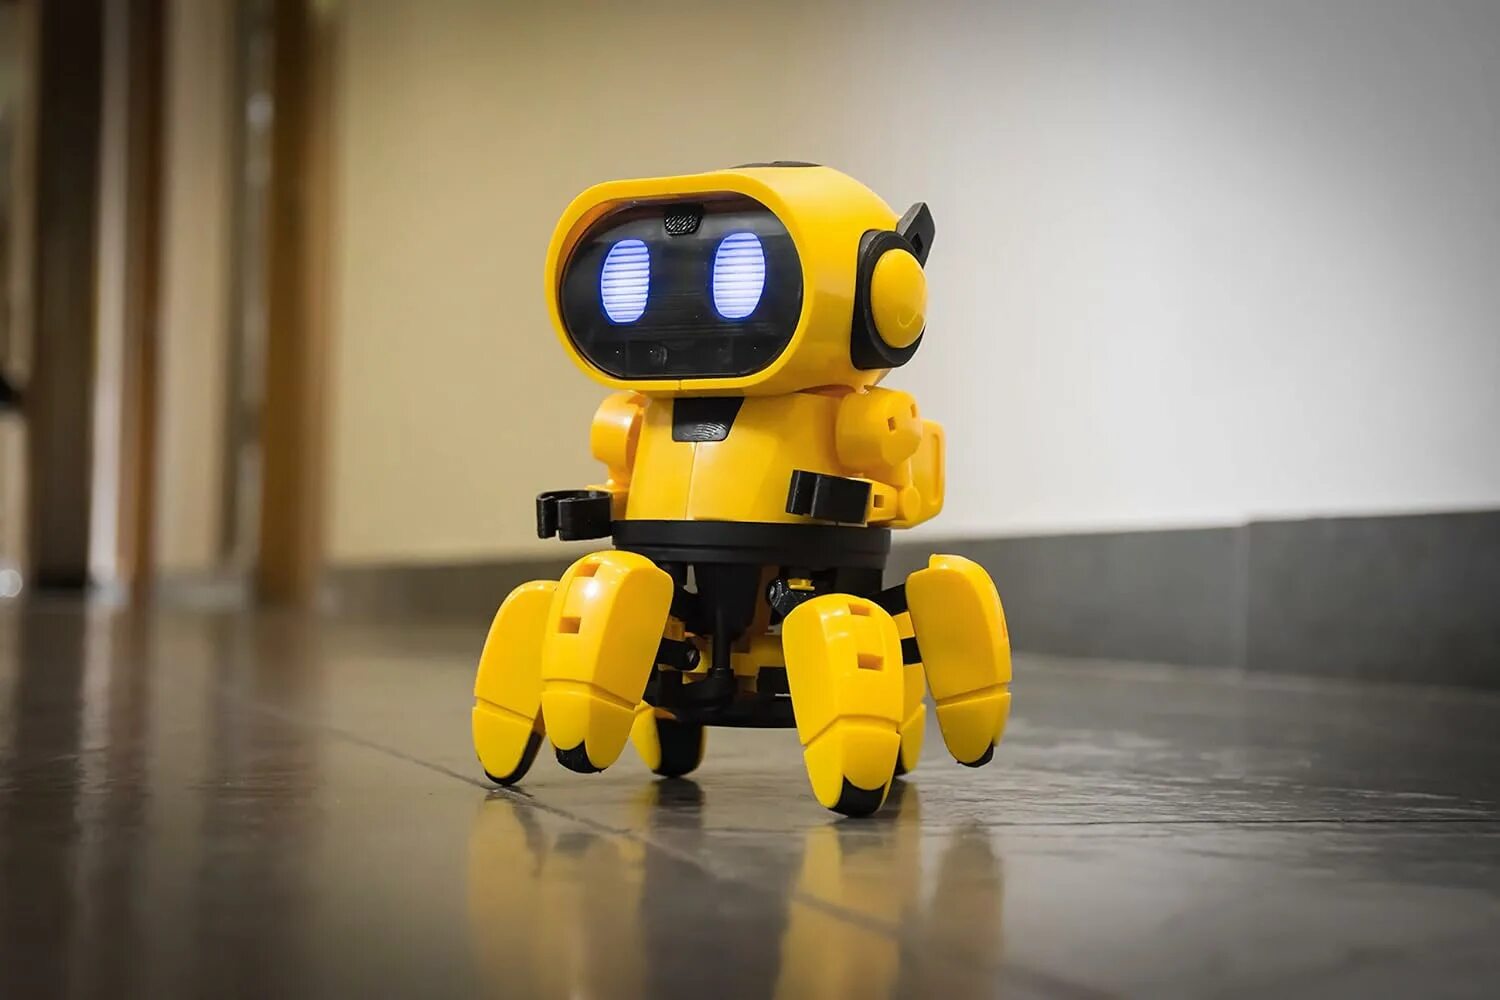 Тобби 2 робот. Желтый робот Тоби. Конструктор робототехника робот Железяка. Собака Тобби робот. Малыш в желтом робот